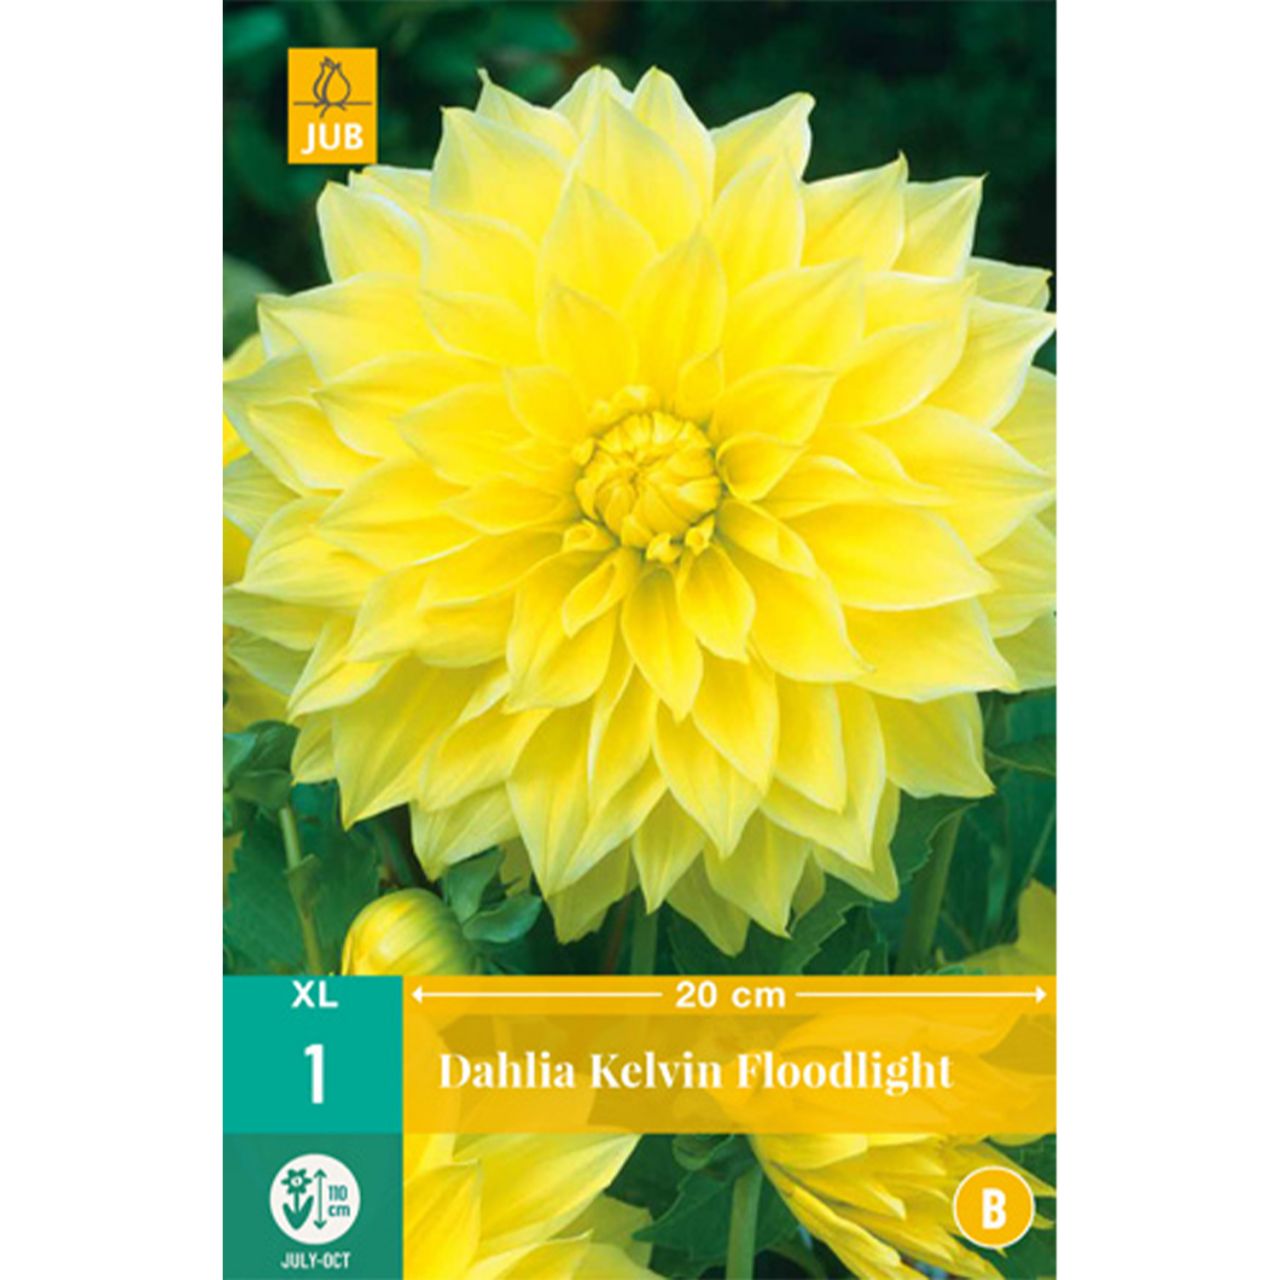 Kategorie <b>Frühlings-Blumenzwiebeln </b> - Großblumige Dahlie 'Kelvin Floodlight' - 1 Stück - Dahlia